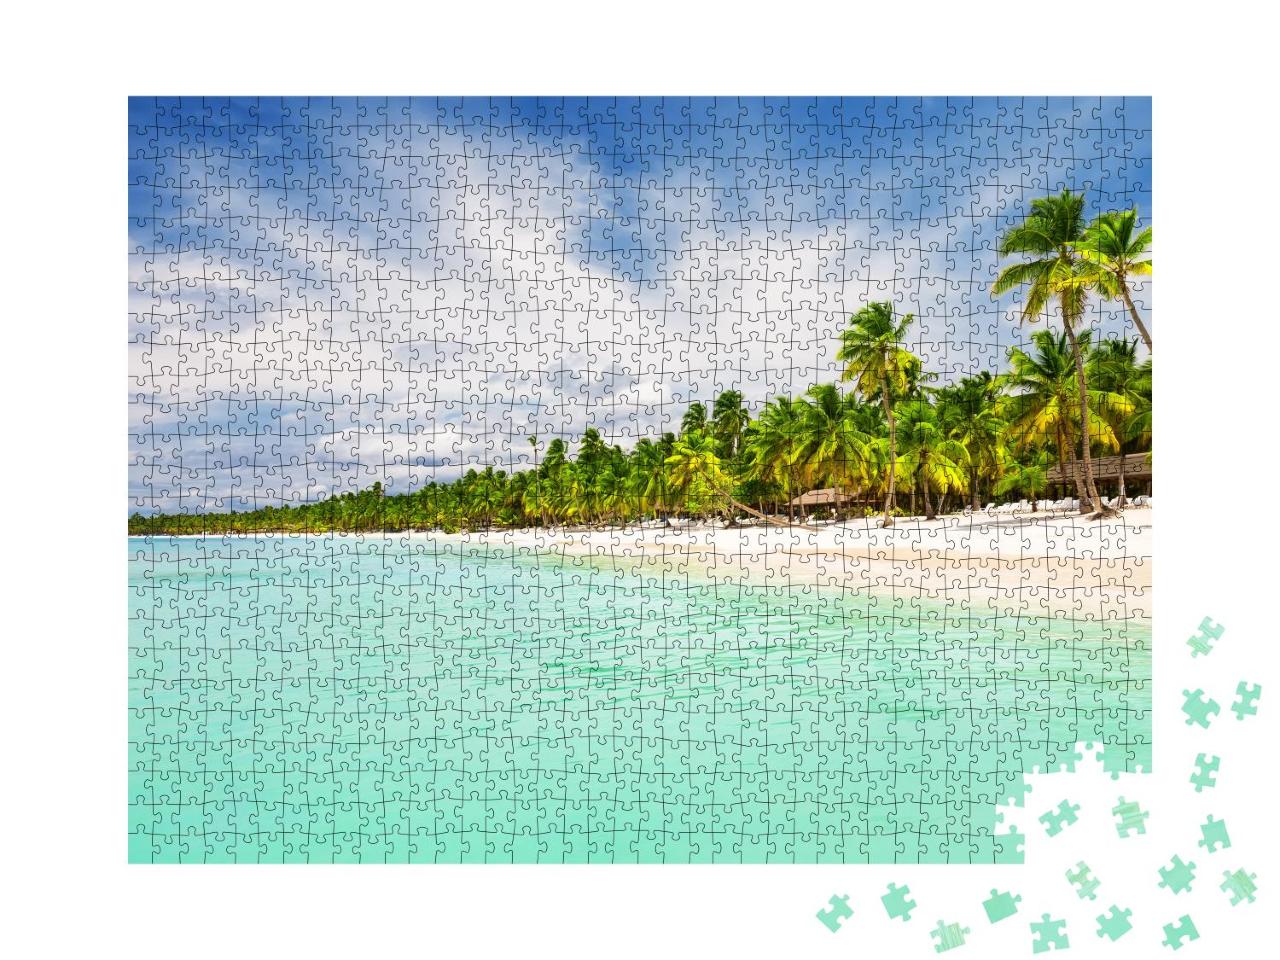 Puzzle 1000 Teile „Weißer Sandstrand von Punta Cana, Dominikanische Republik“